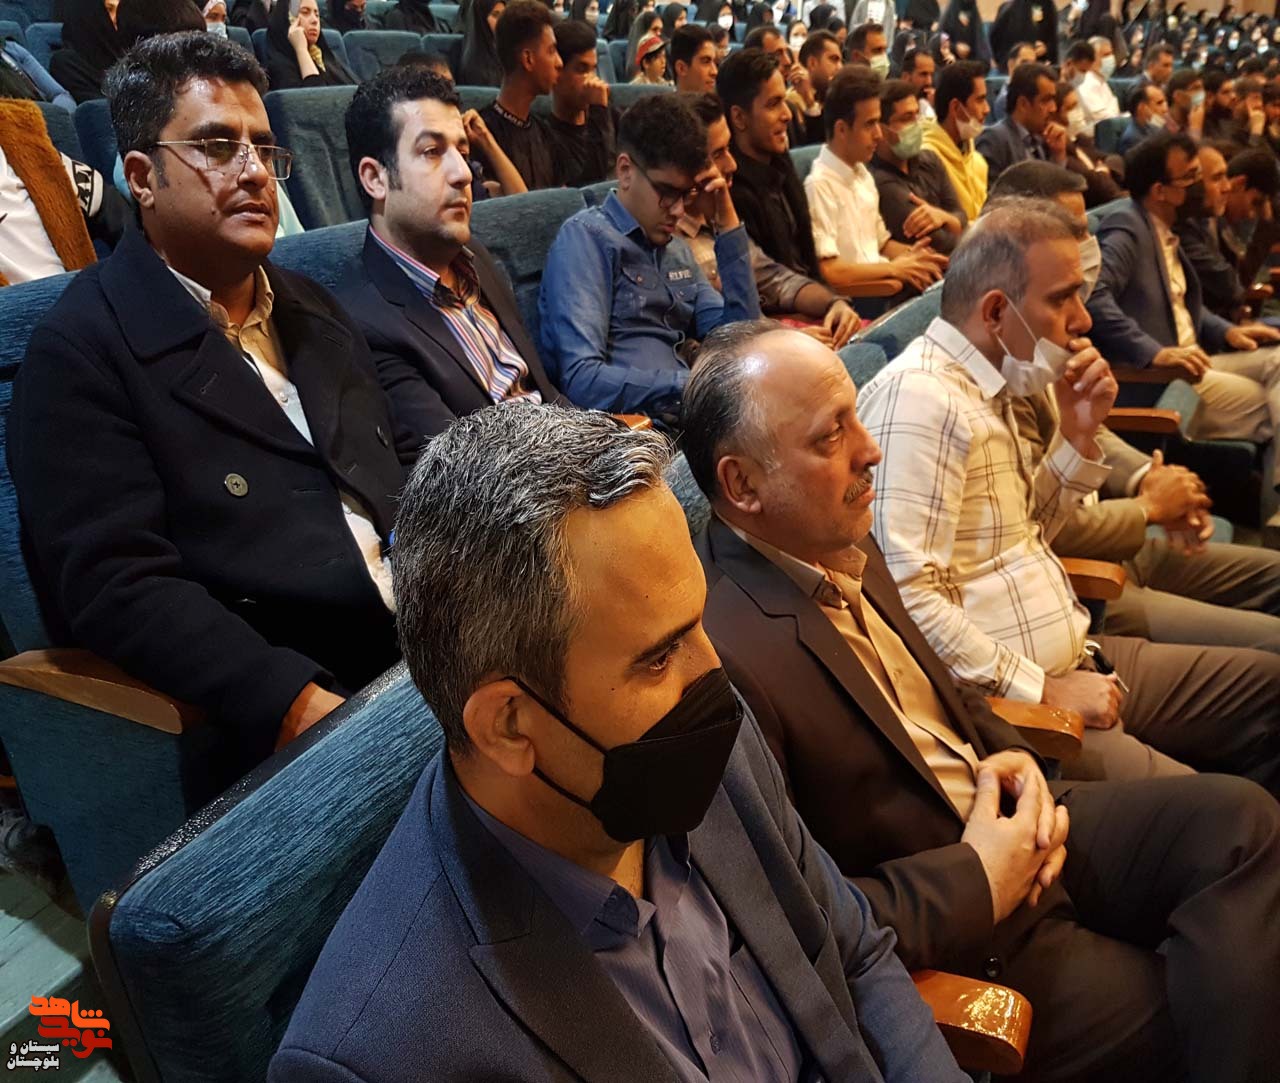 ششمین یادواره خبرنگار شهید مدافع حرم حاج محسن خزایی در تالار فردوسی دانشگاه سیستان و بلوچستان در زاهدان برگزار شد.